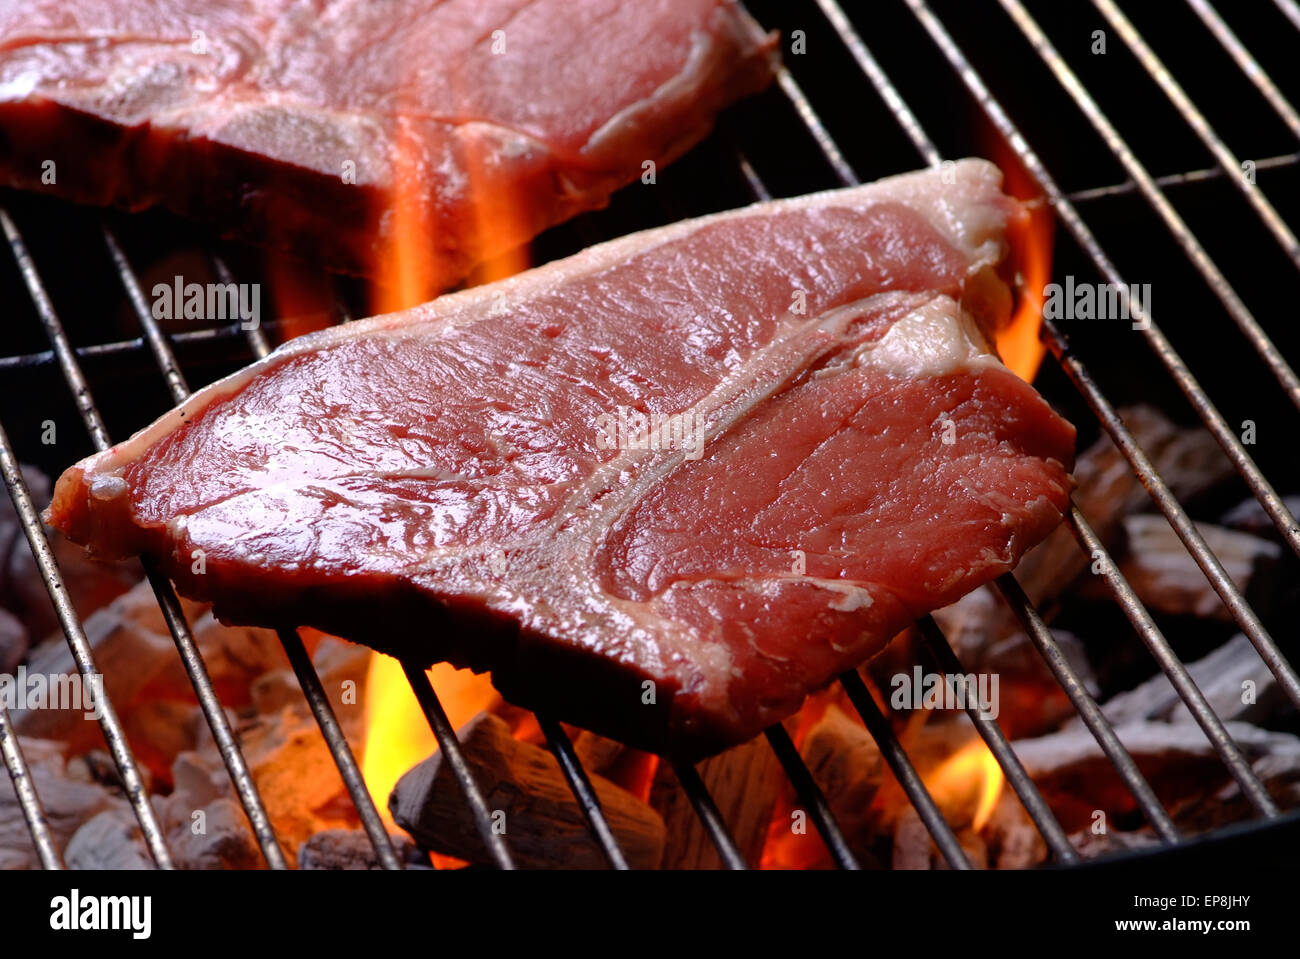 T bone steak à un braai sud-africain autrement connu comme un barbecue Banque D'Images